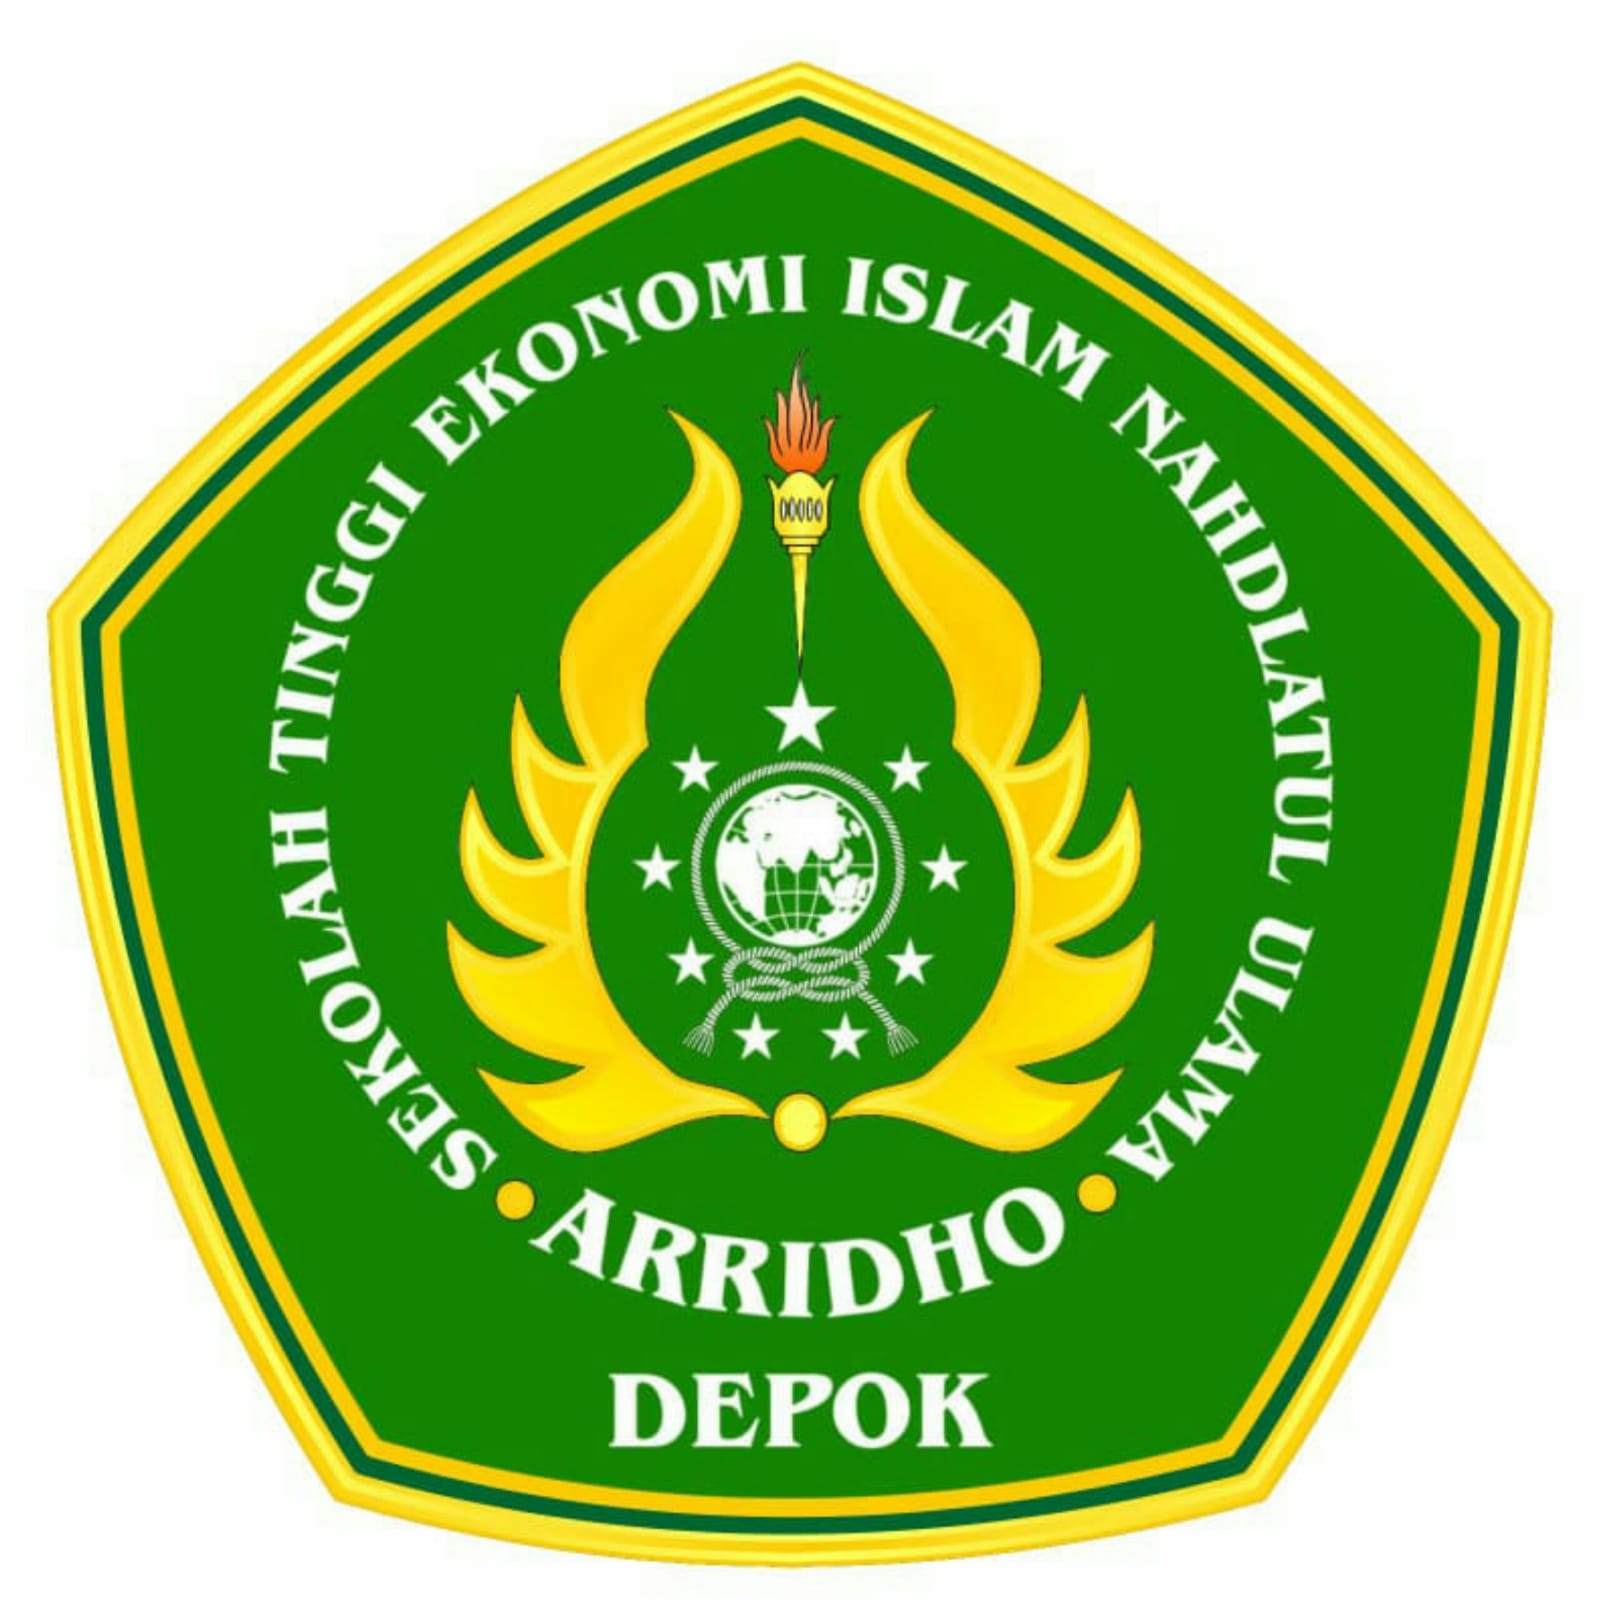 logo Sekolah Tinggi Ekonomi Islam Nahdlatul Ulama Arridho Depok